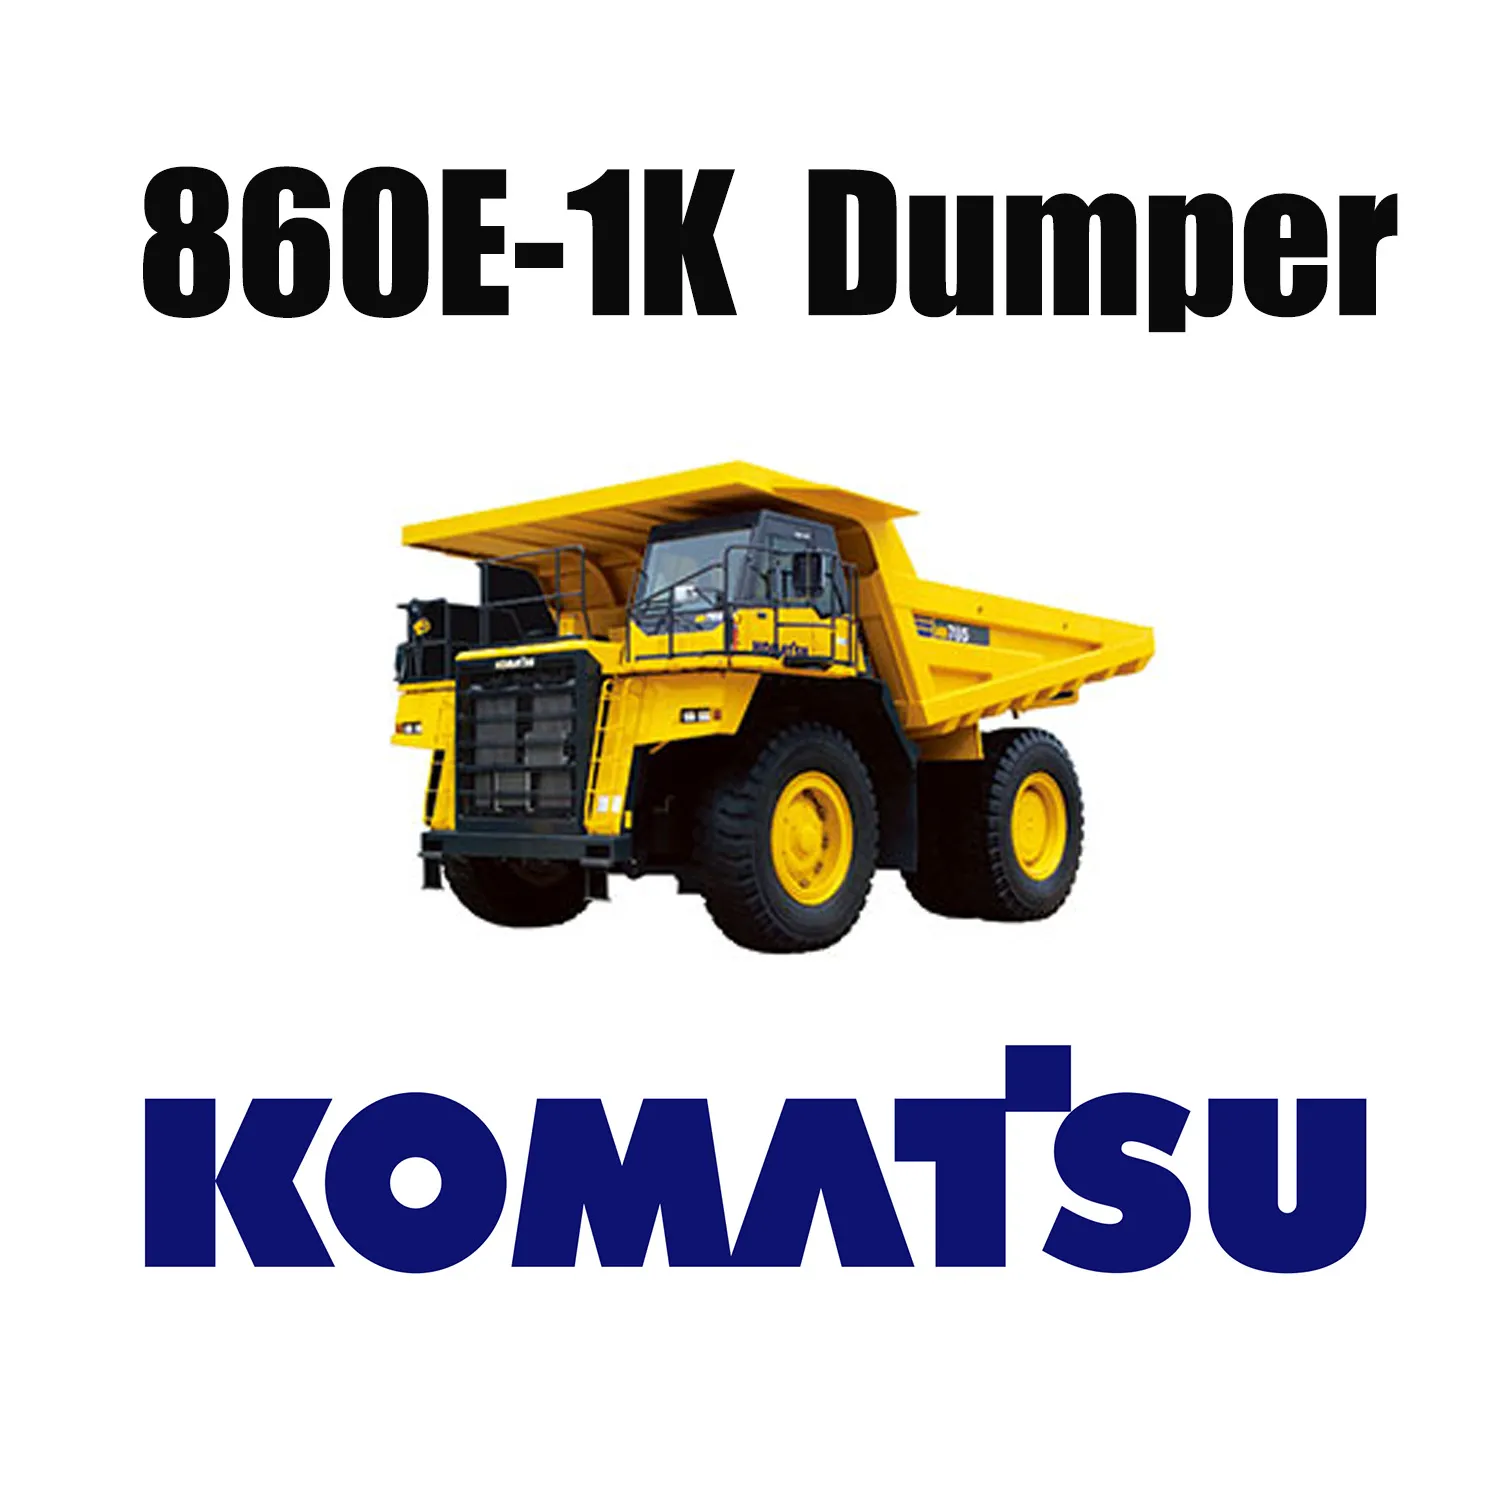 الإطارات العملاقة 50 / 80R57 المخصصة للطرق الوعرة المستخدمة في منجم الفحم لـ KOMATSU 860E-1K